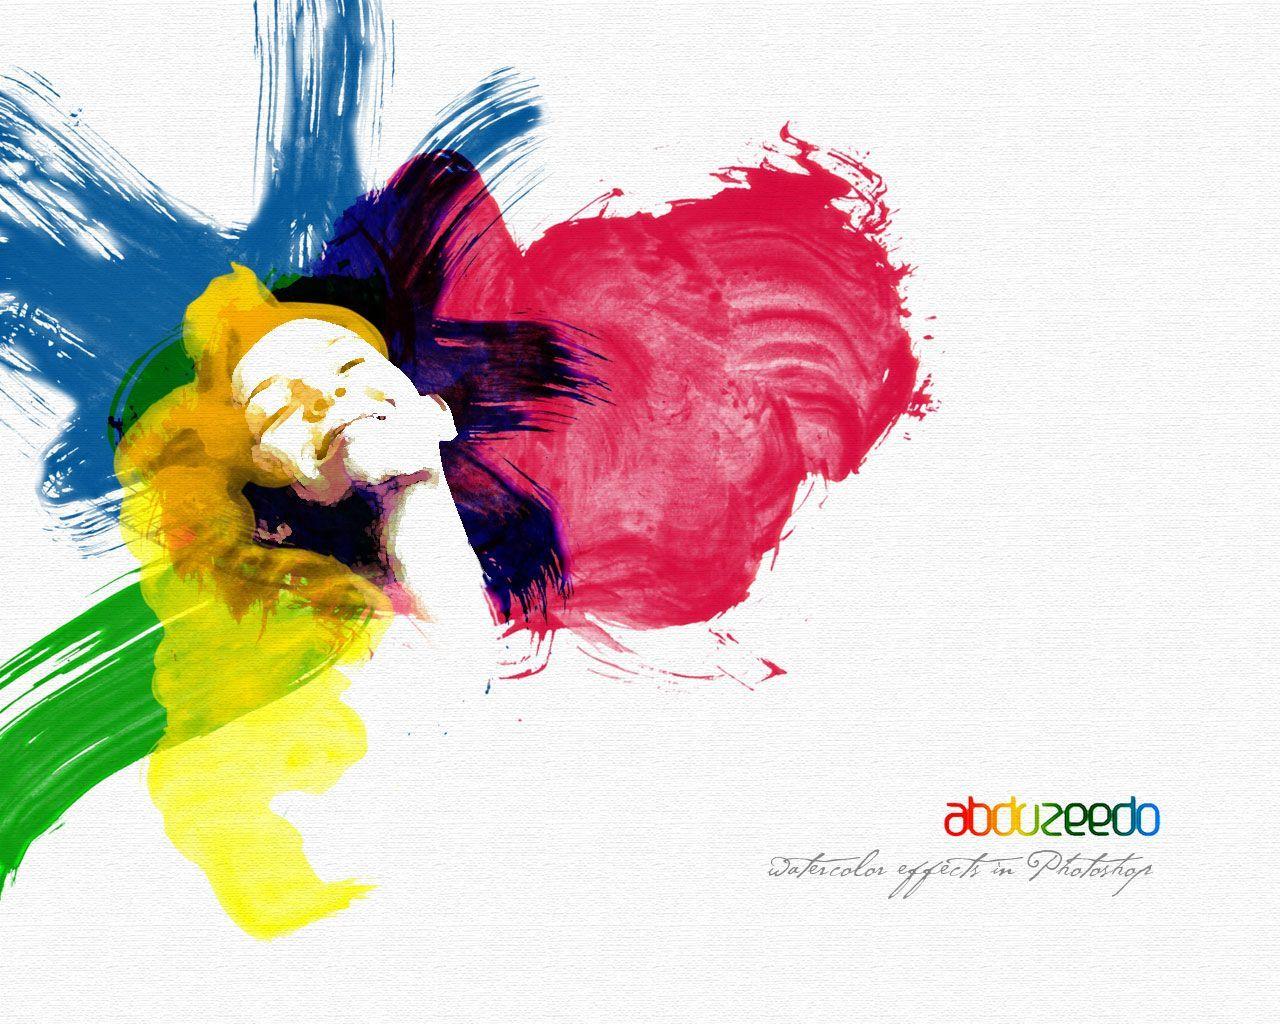 Watercolor Effect in Photohop. Abduzeedo Design